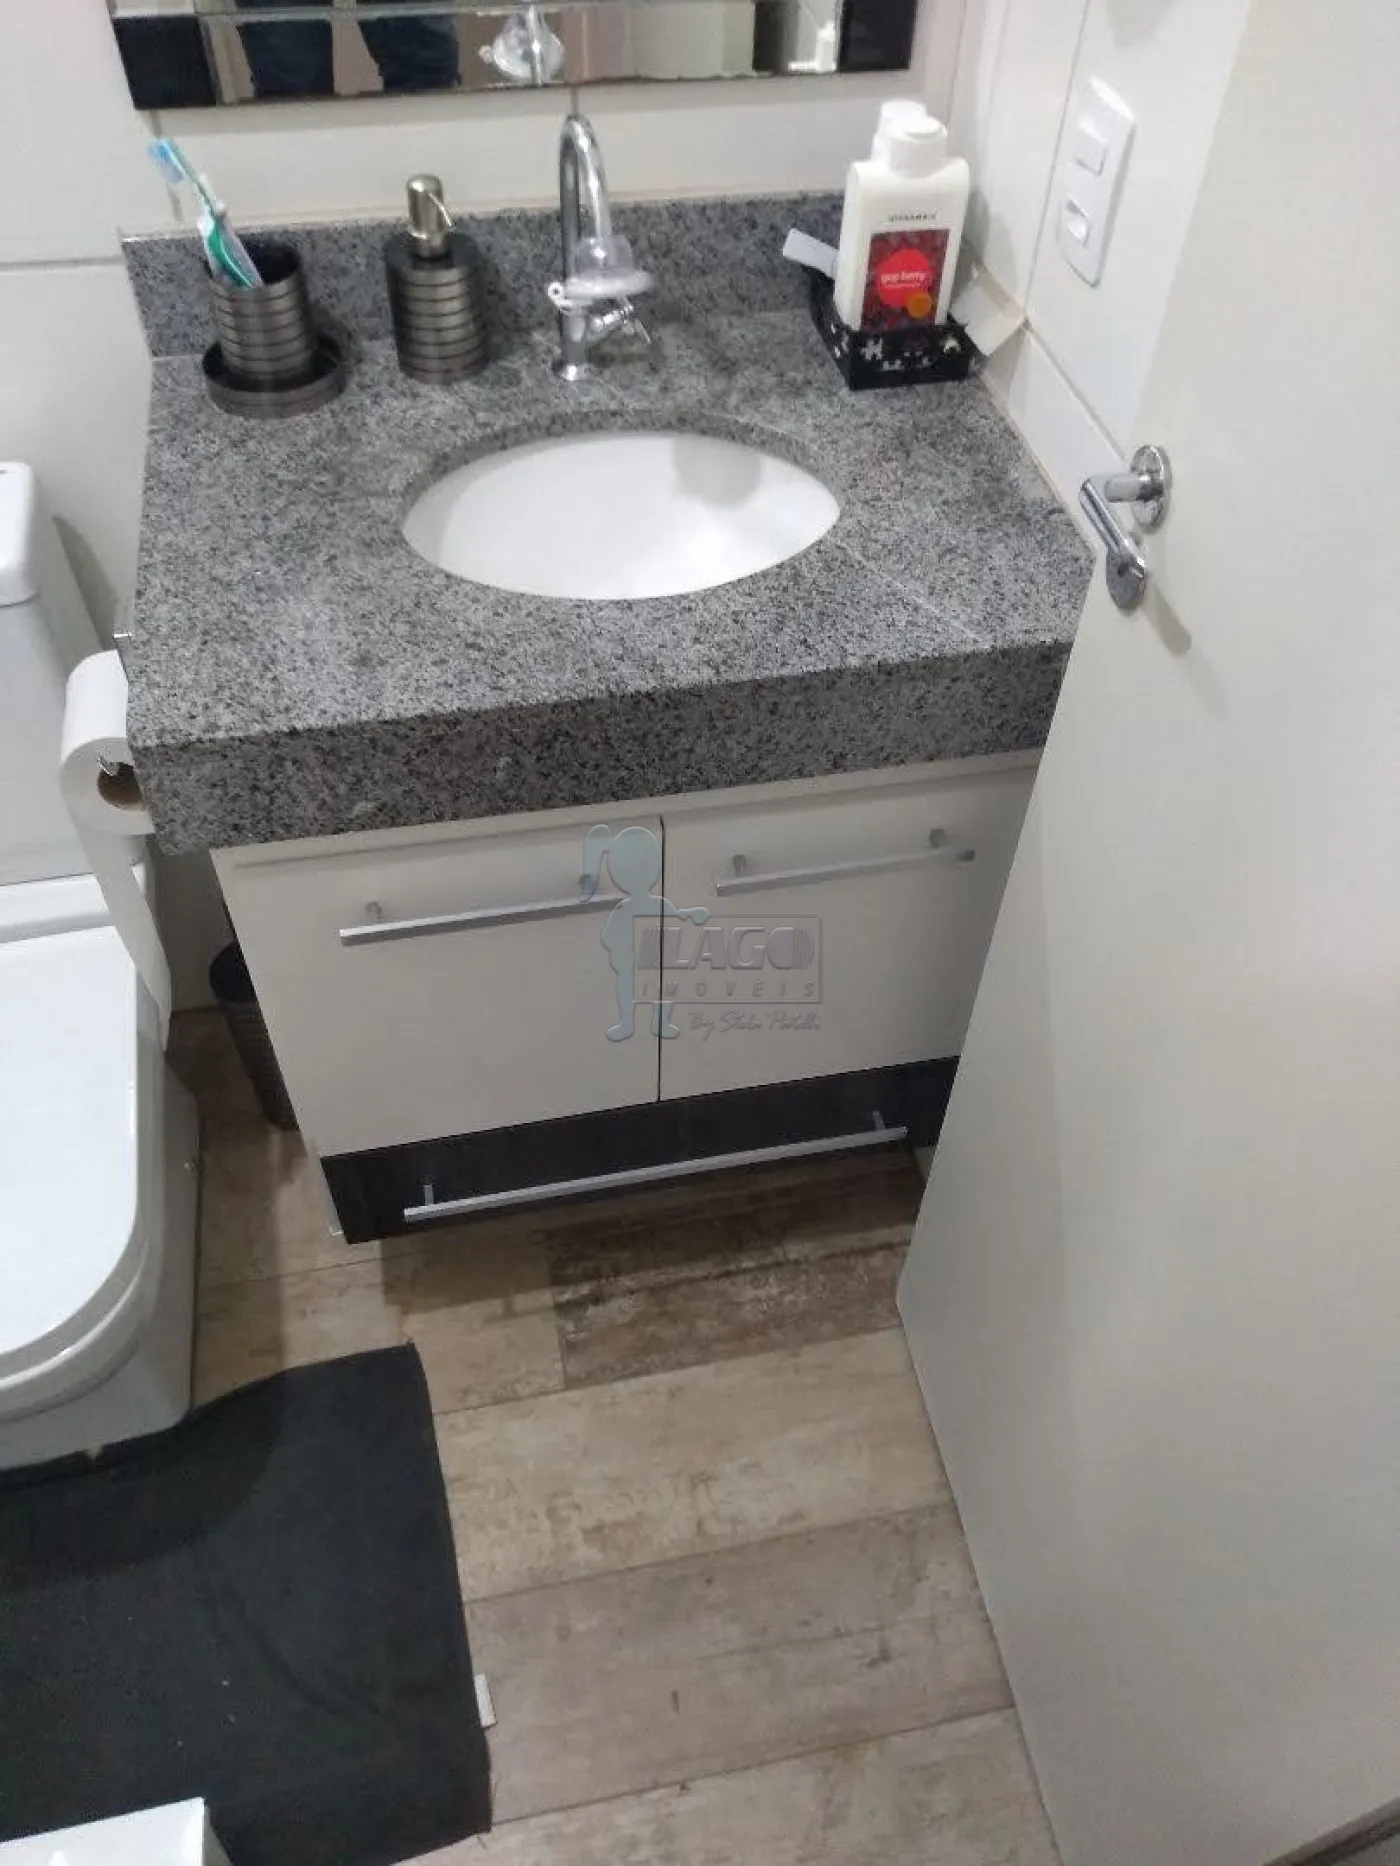 Comprar Apartamentos / Padrão em Ribeirão Preto R$ 215.000,00 - Foto 7